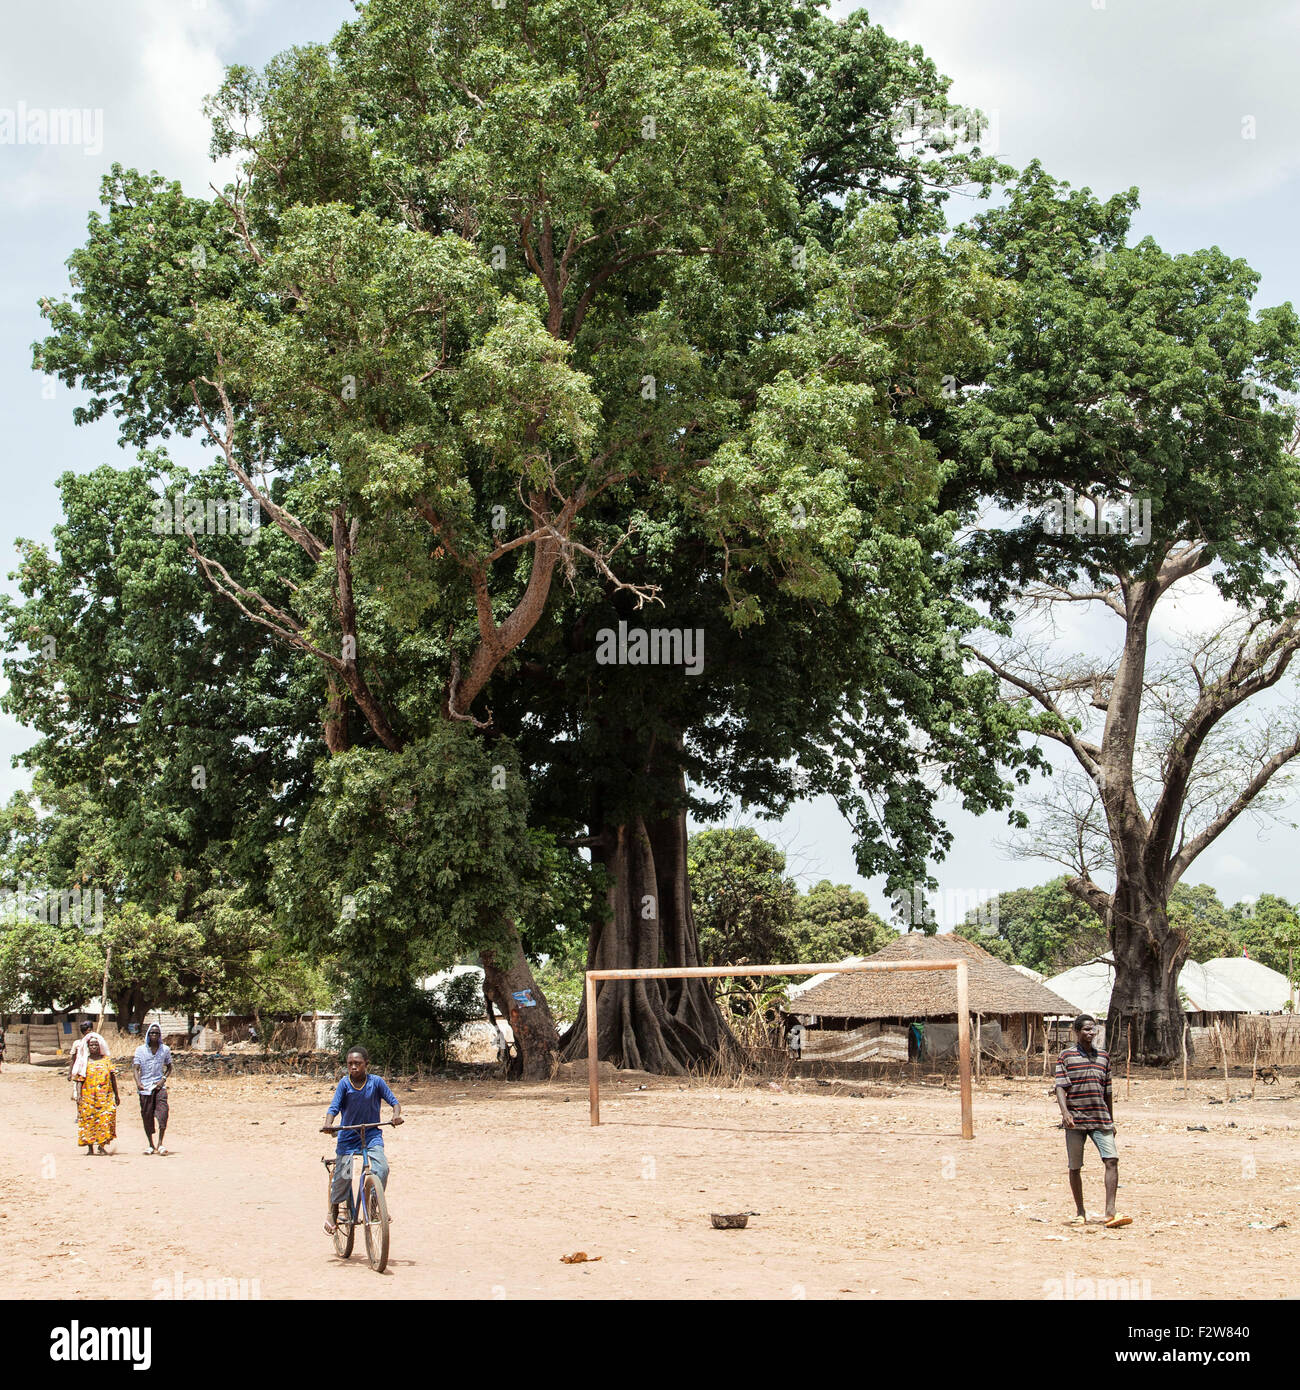 Scena di strada in Guinea Bissau residenti a piedi e in bicicletta equitazione presso un campo da calcio e un albero gigante in una zona rurale villaggio africano Foto Stock